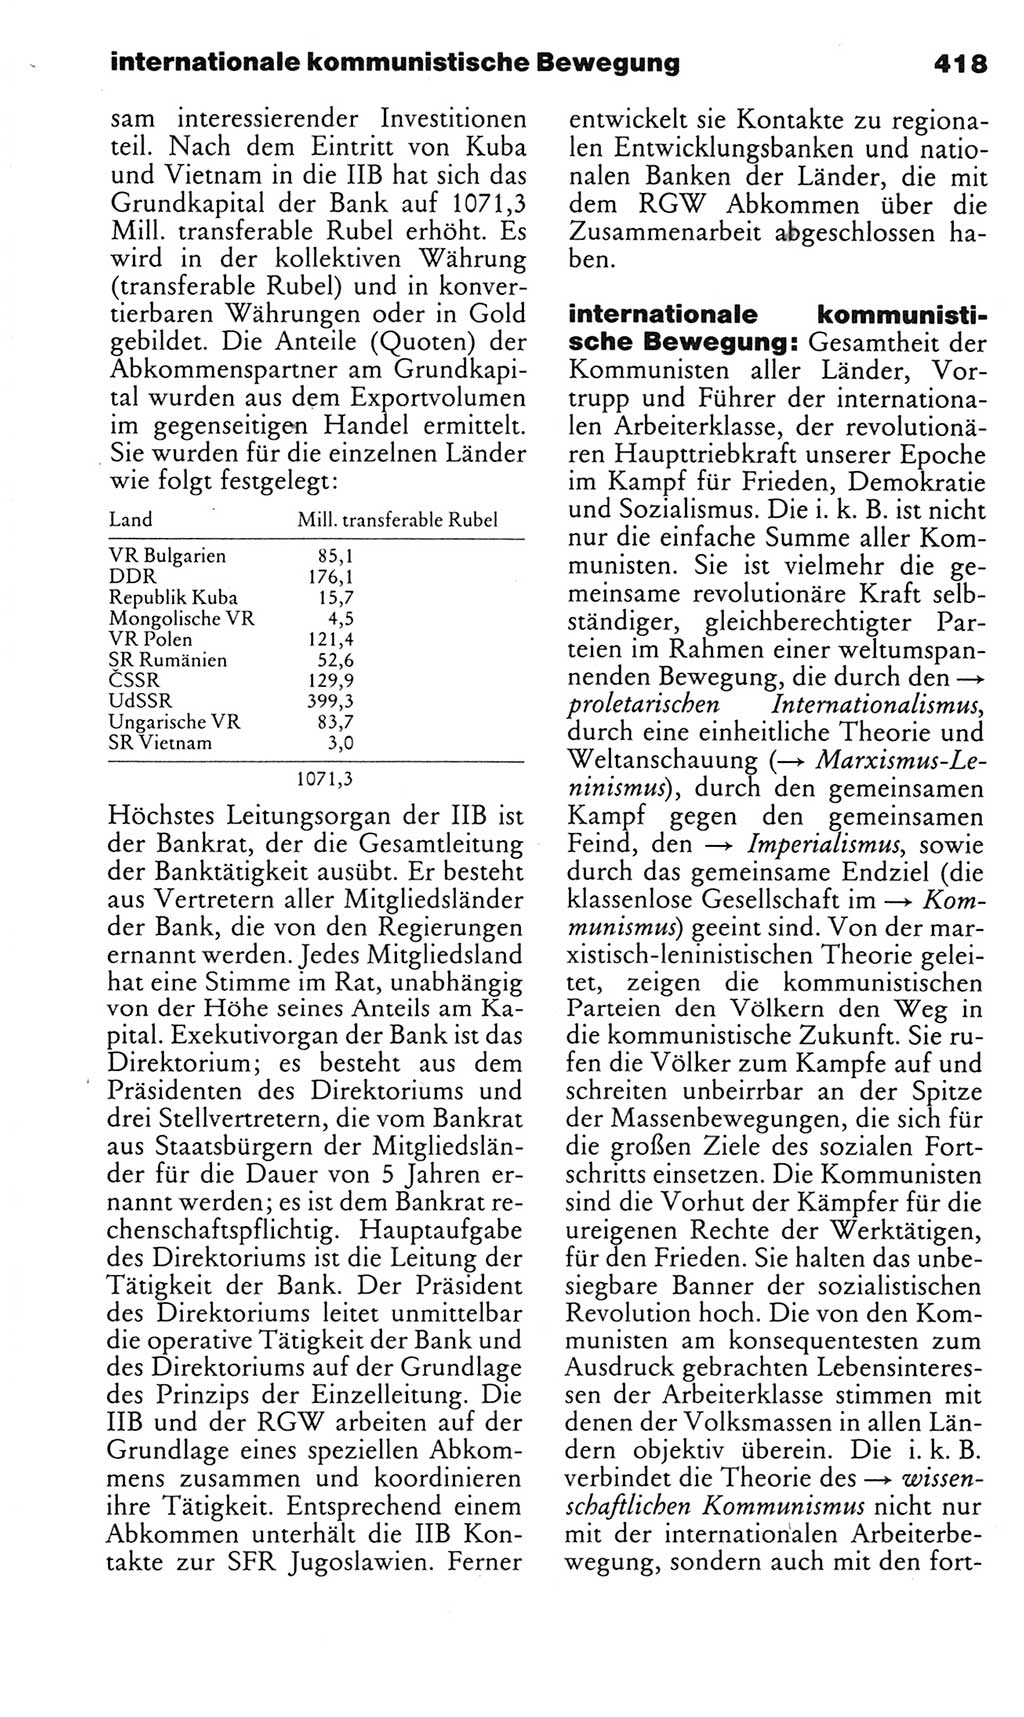 Kleines politisches Wörterbuch [Deutsche Demokratische Republik (DDR)] 1983, Seite 418 (Kl. pol. Wb. DDR 1983, S. 418)